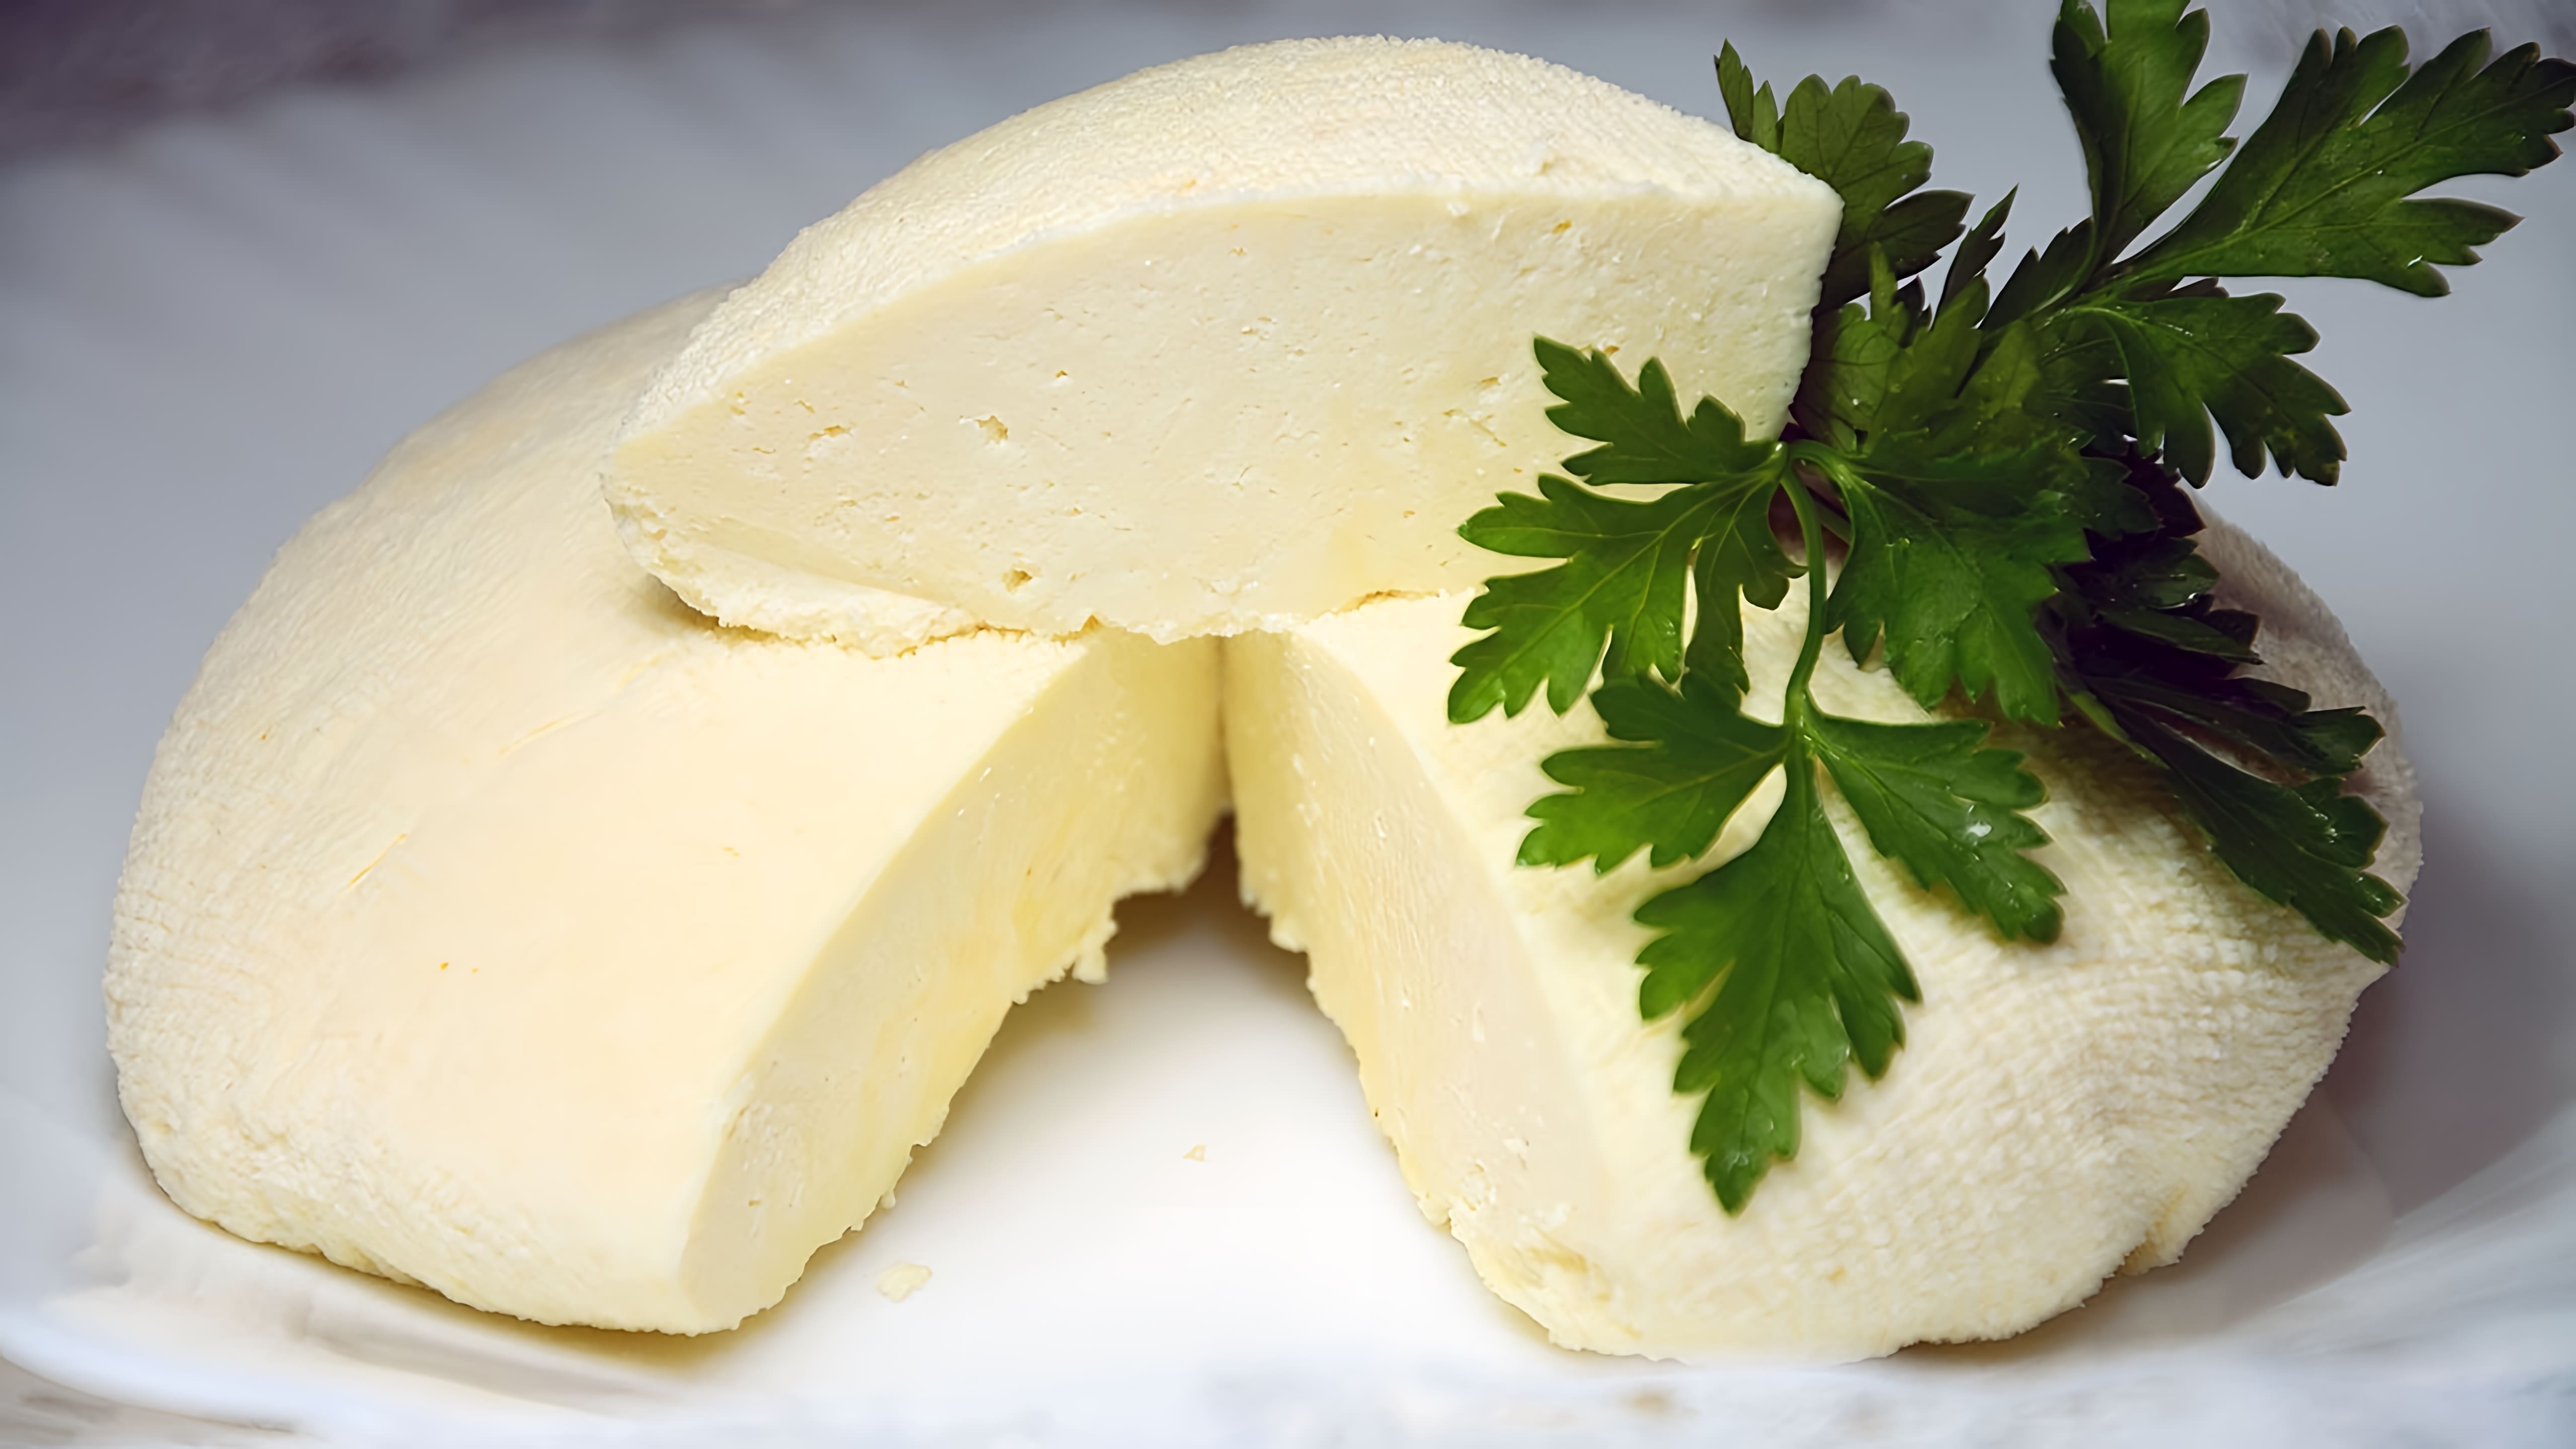 В этом видео демонстрируется простой и быстрый рецепт приготовления домашнего сыра из молока